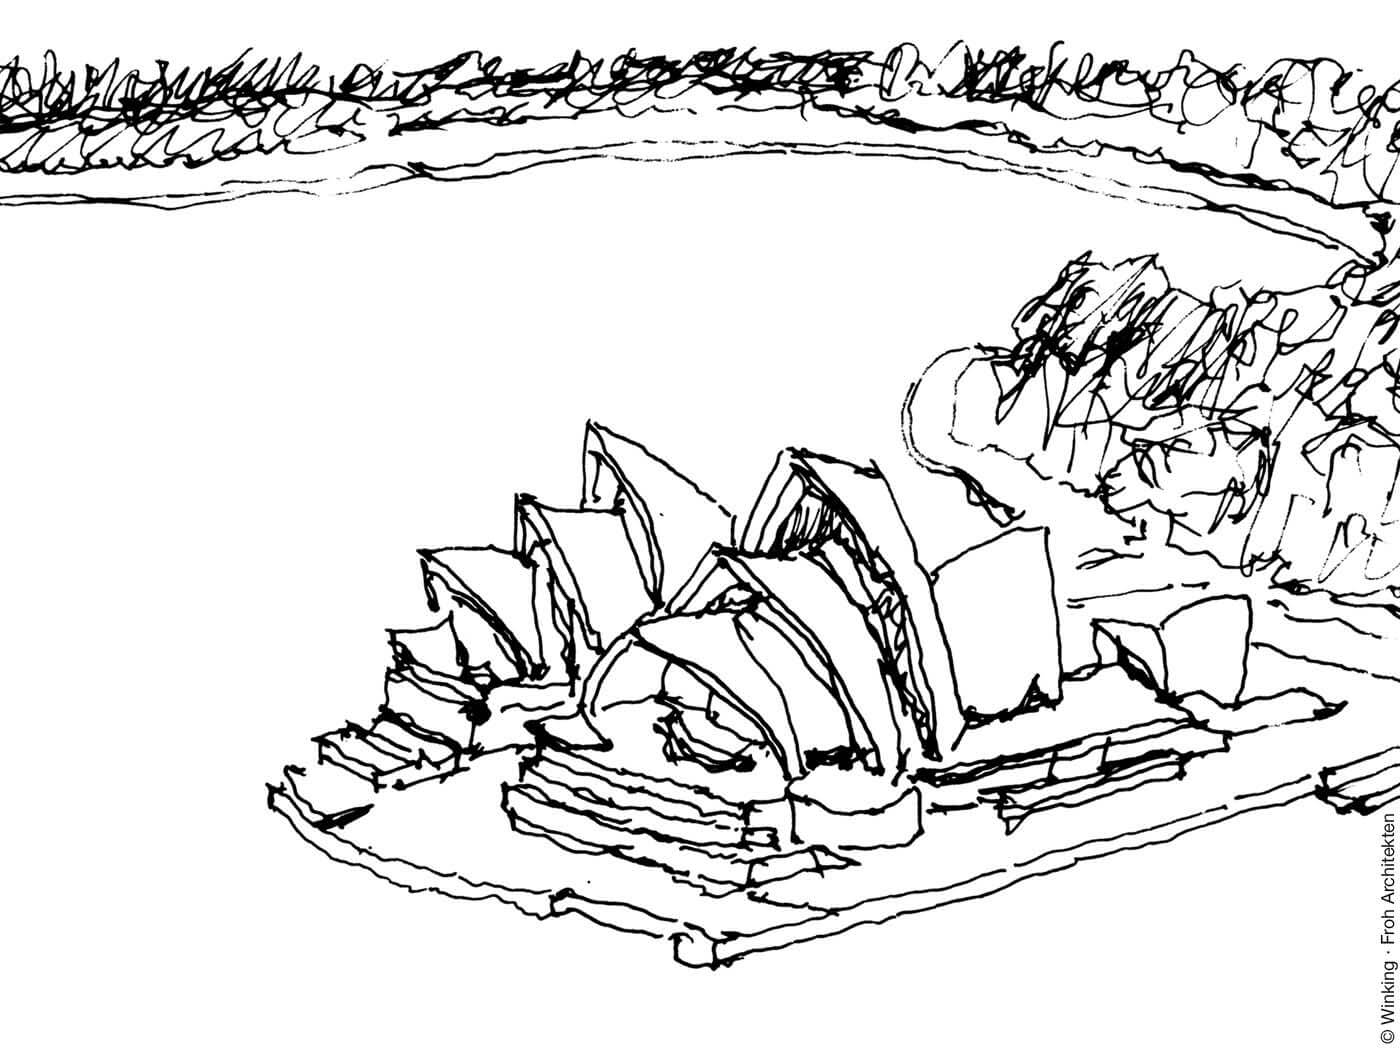 Zeichnung von Bernhard Winking: Jørn Utzon, Sydney Opera House, Sydney